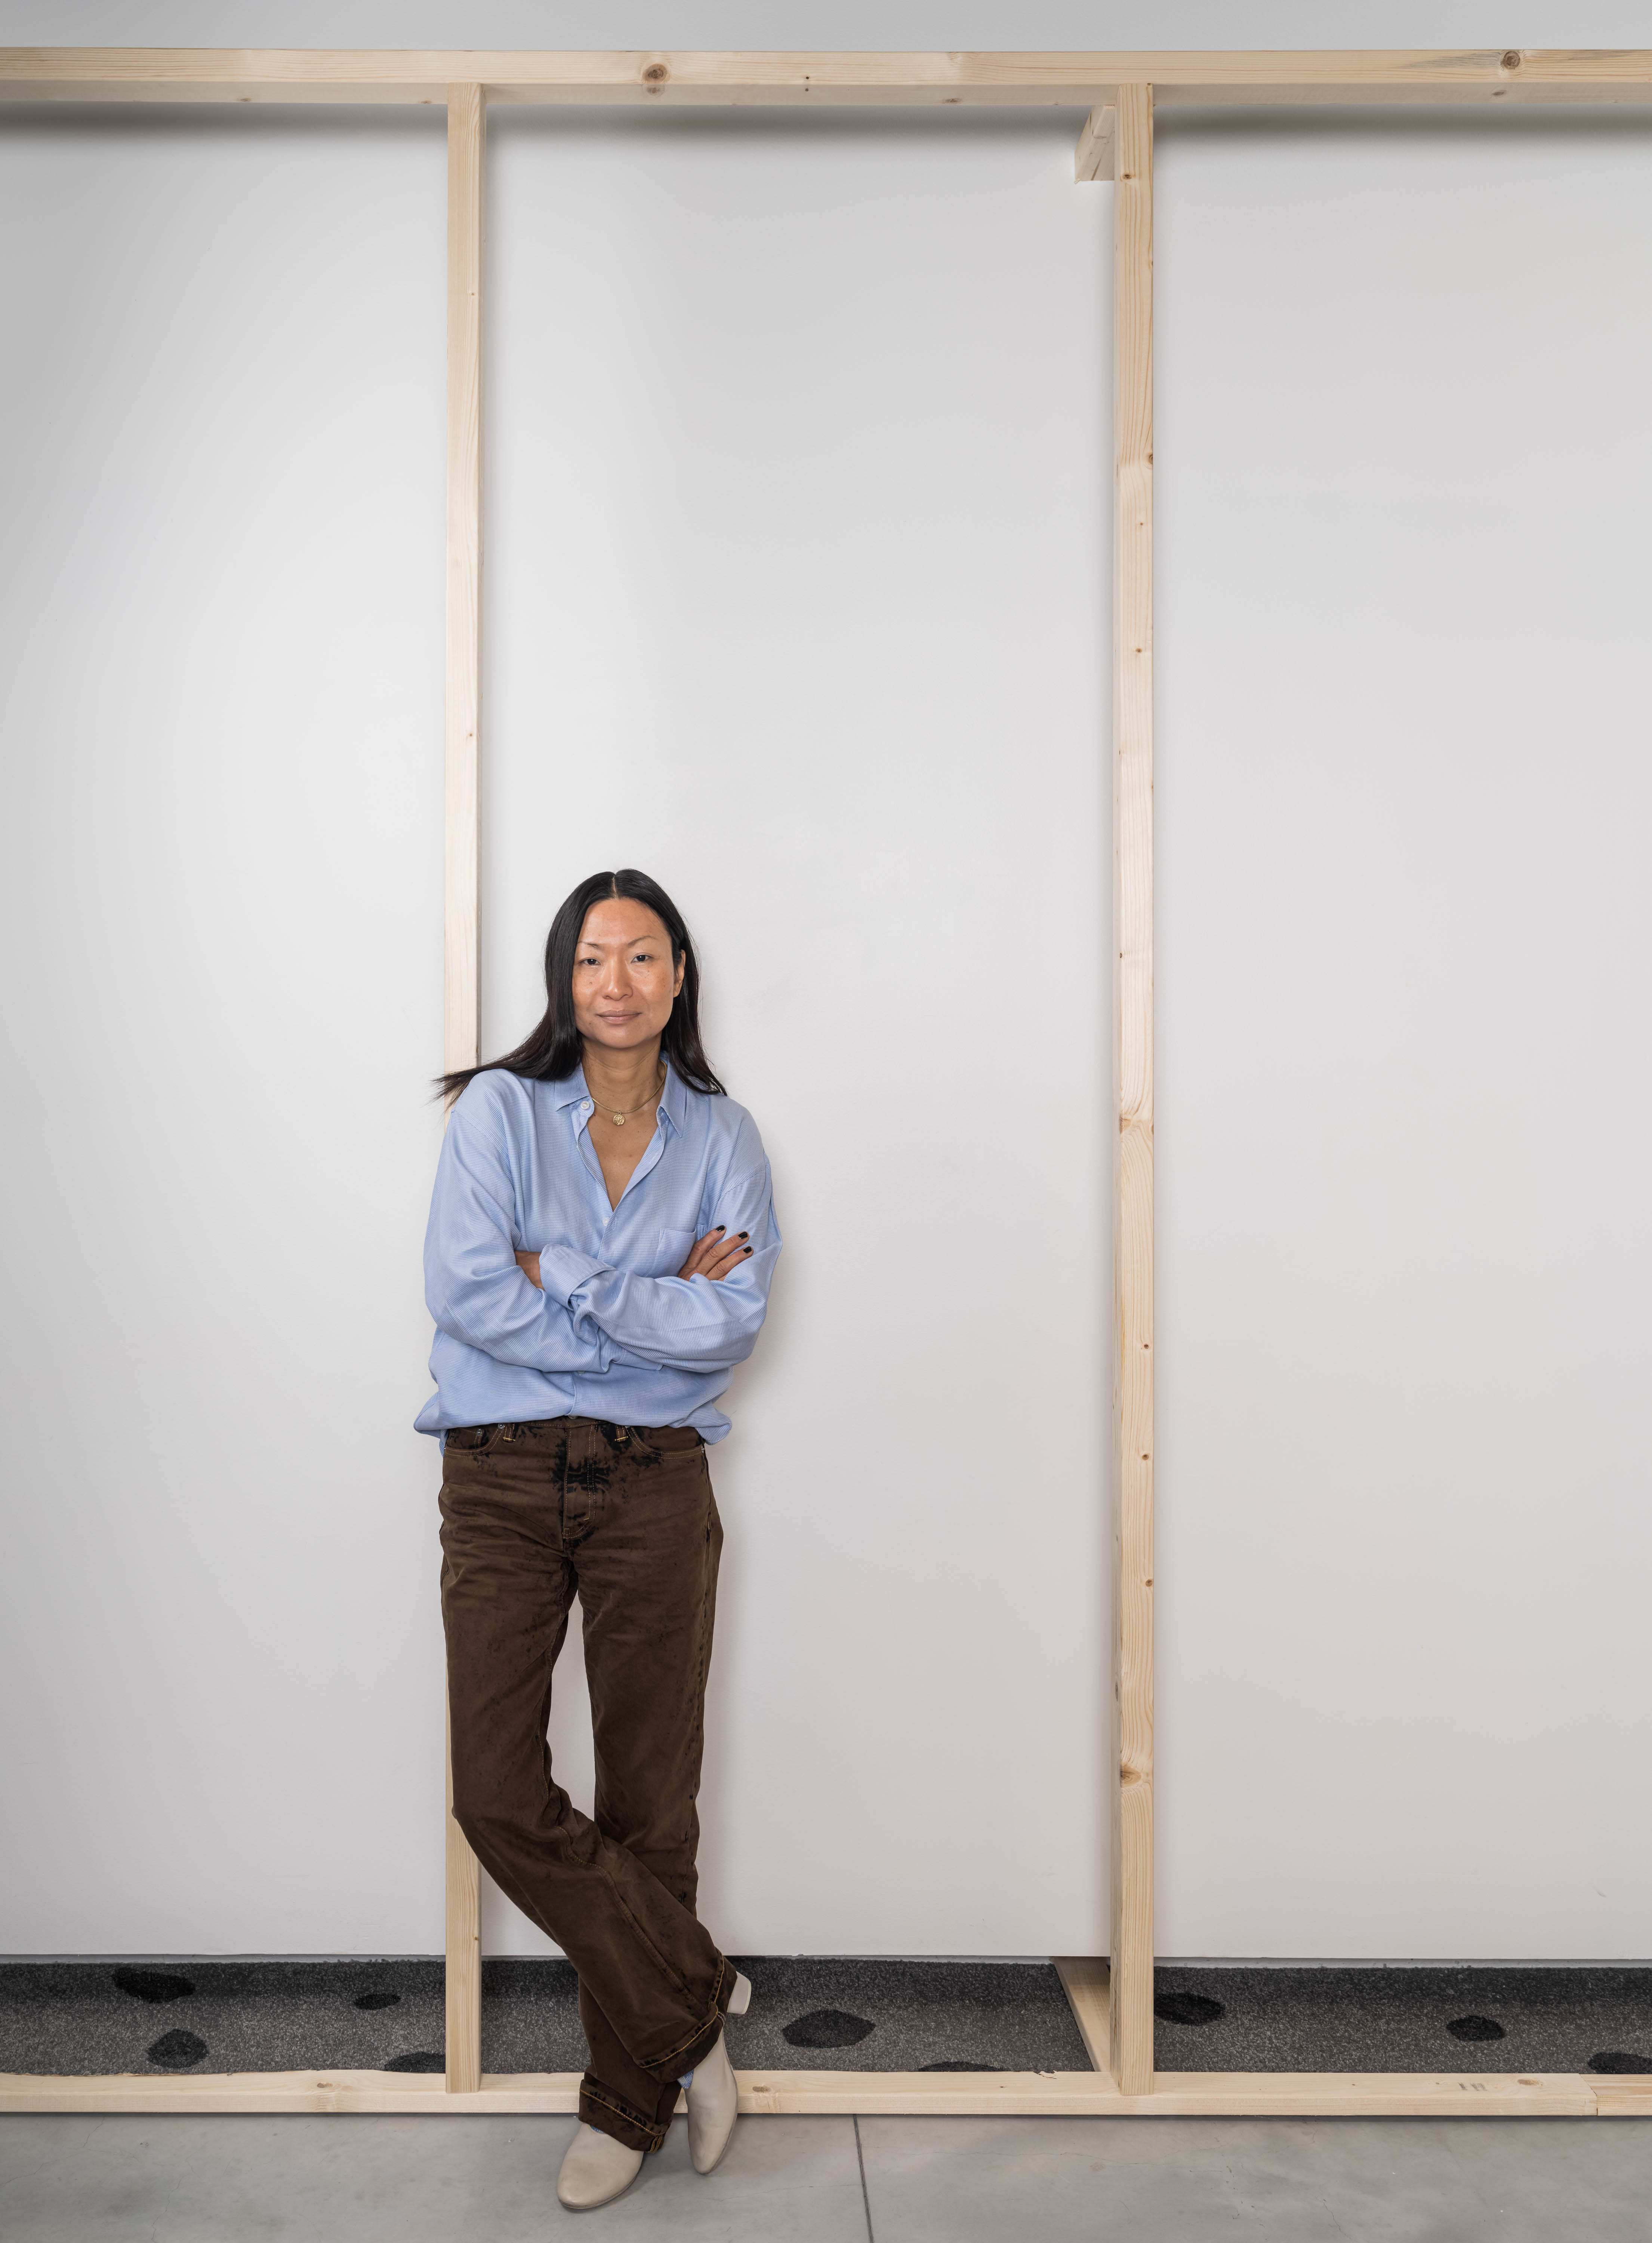 Konstnären Lisa Tan poserar med armarna i kors framför en träinstallation. Hon är ikäldd ljusblå skjorta och bruna kostymbyxor.